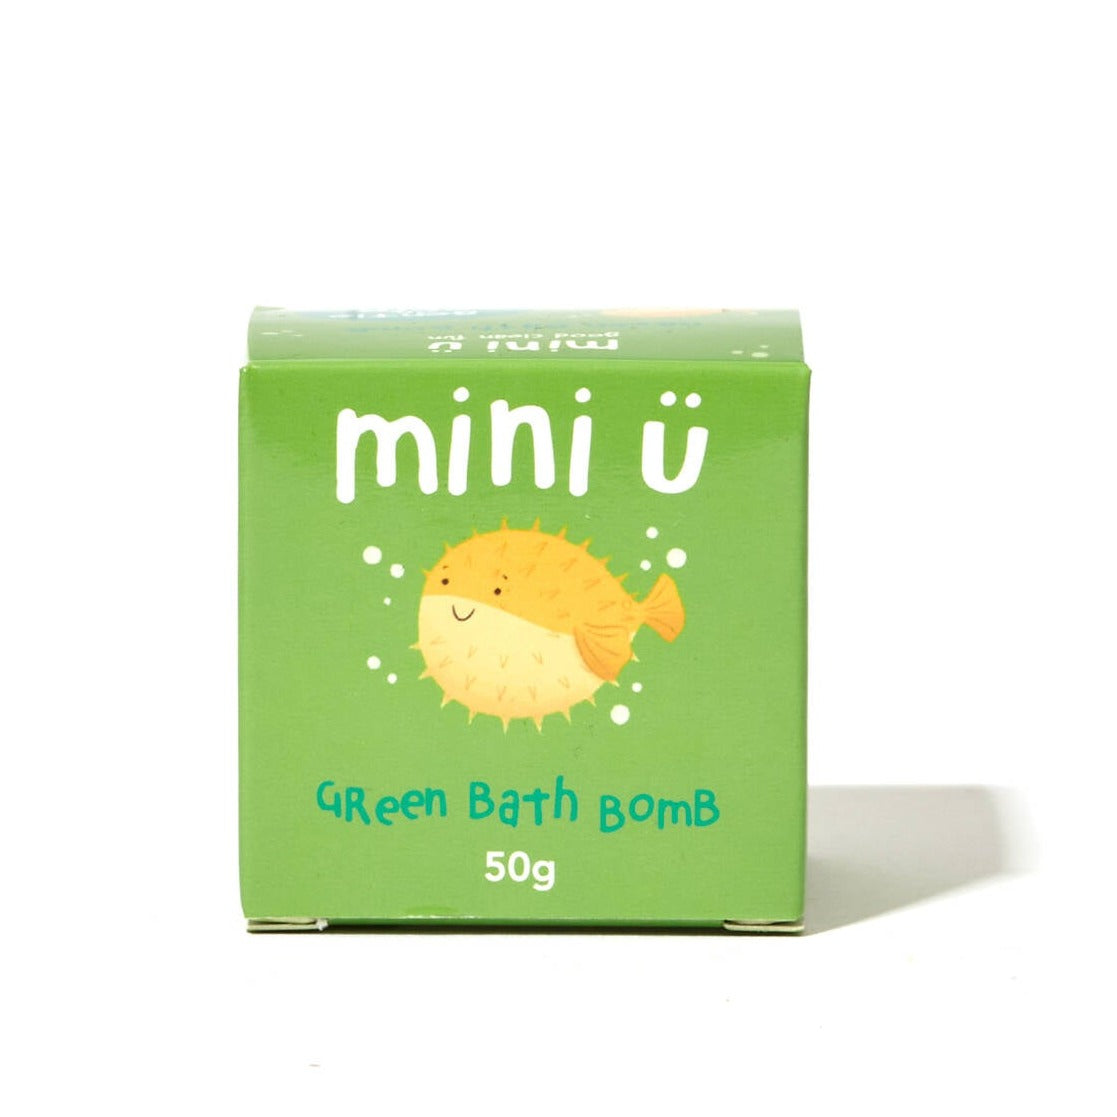 Mini U: Musogah zum Baden mit einer überraschenden grünen Badebombe